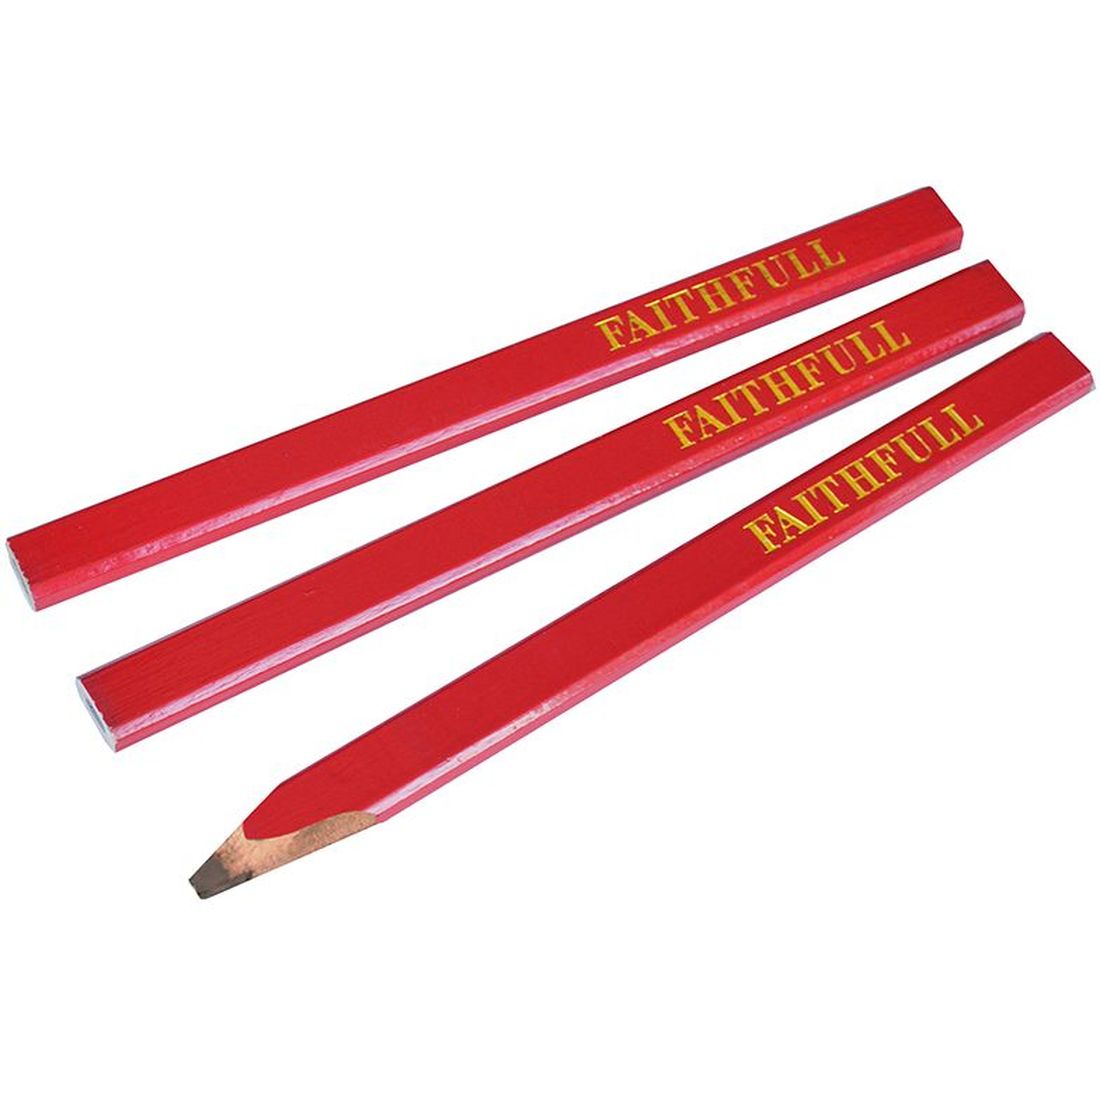 Faithfull Carpenter's Pencils - Red / Medium (Pack 3)                                     